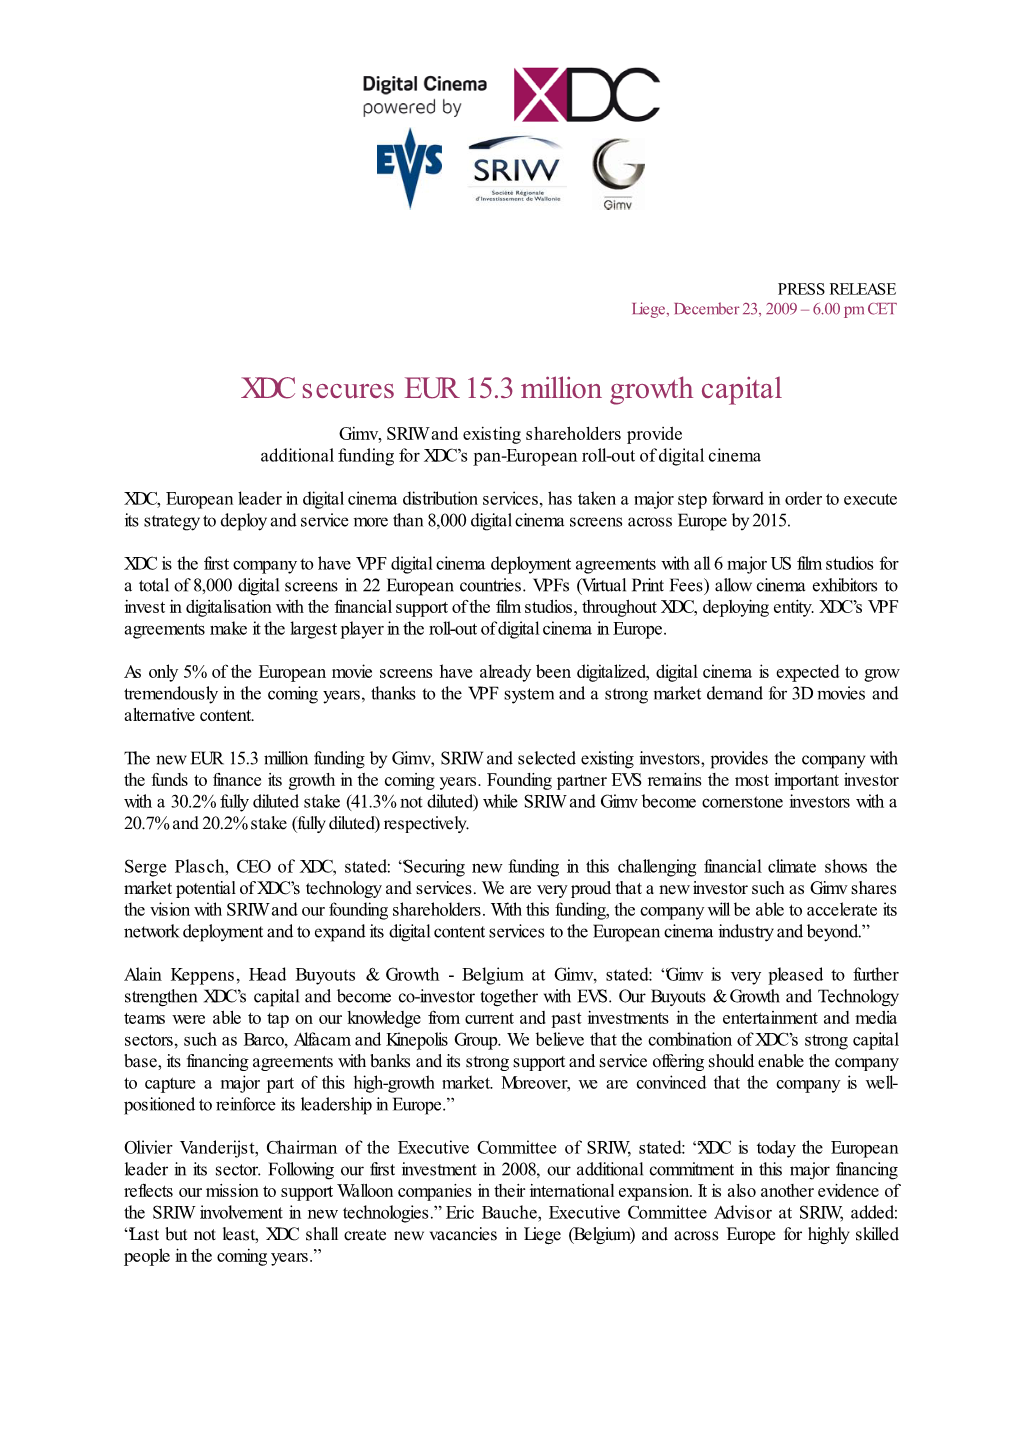 XDC Secures EUR 15.3 Million Growth Capital